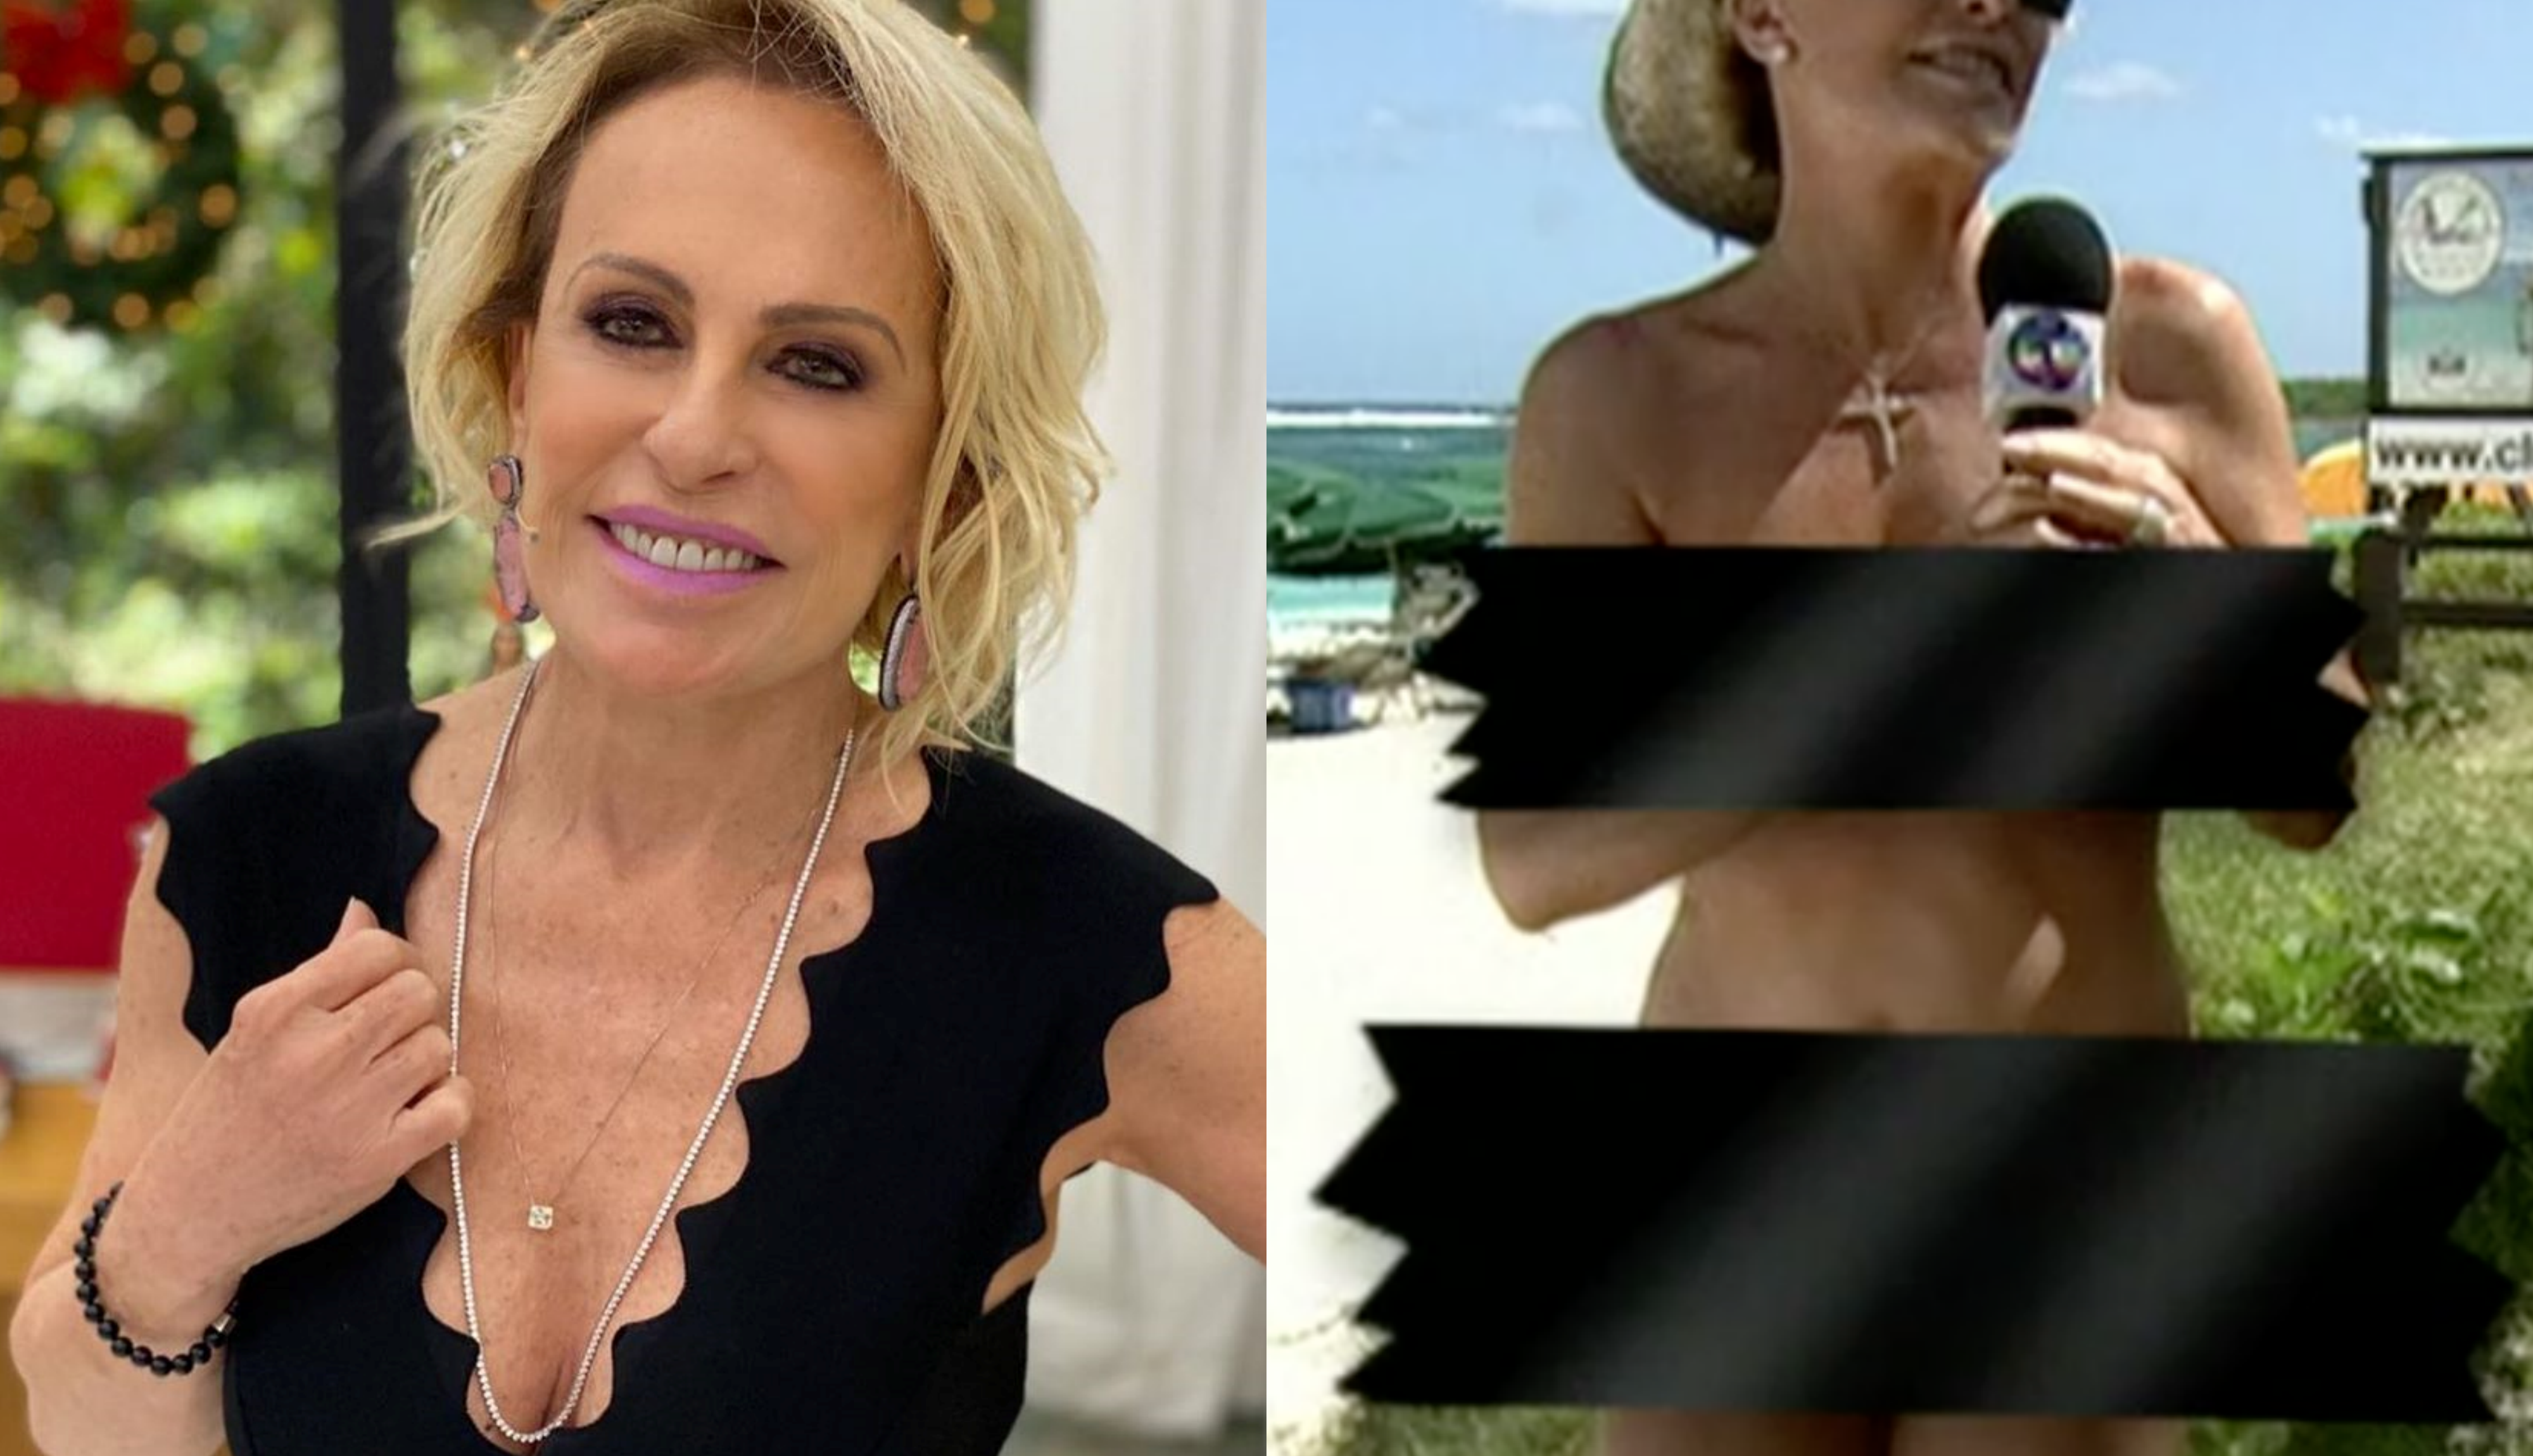 A famosa apresentadora do Mais Você, da Globo, Ana Maria Braga surpreendeu ao aparecer pelada em seu programa ao vivo (Foto: reprodução/Instagram)